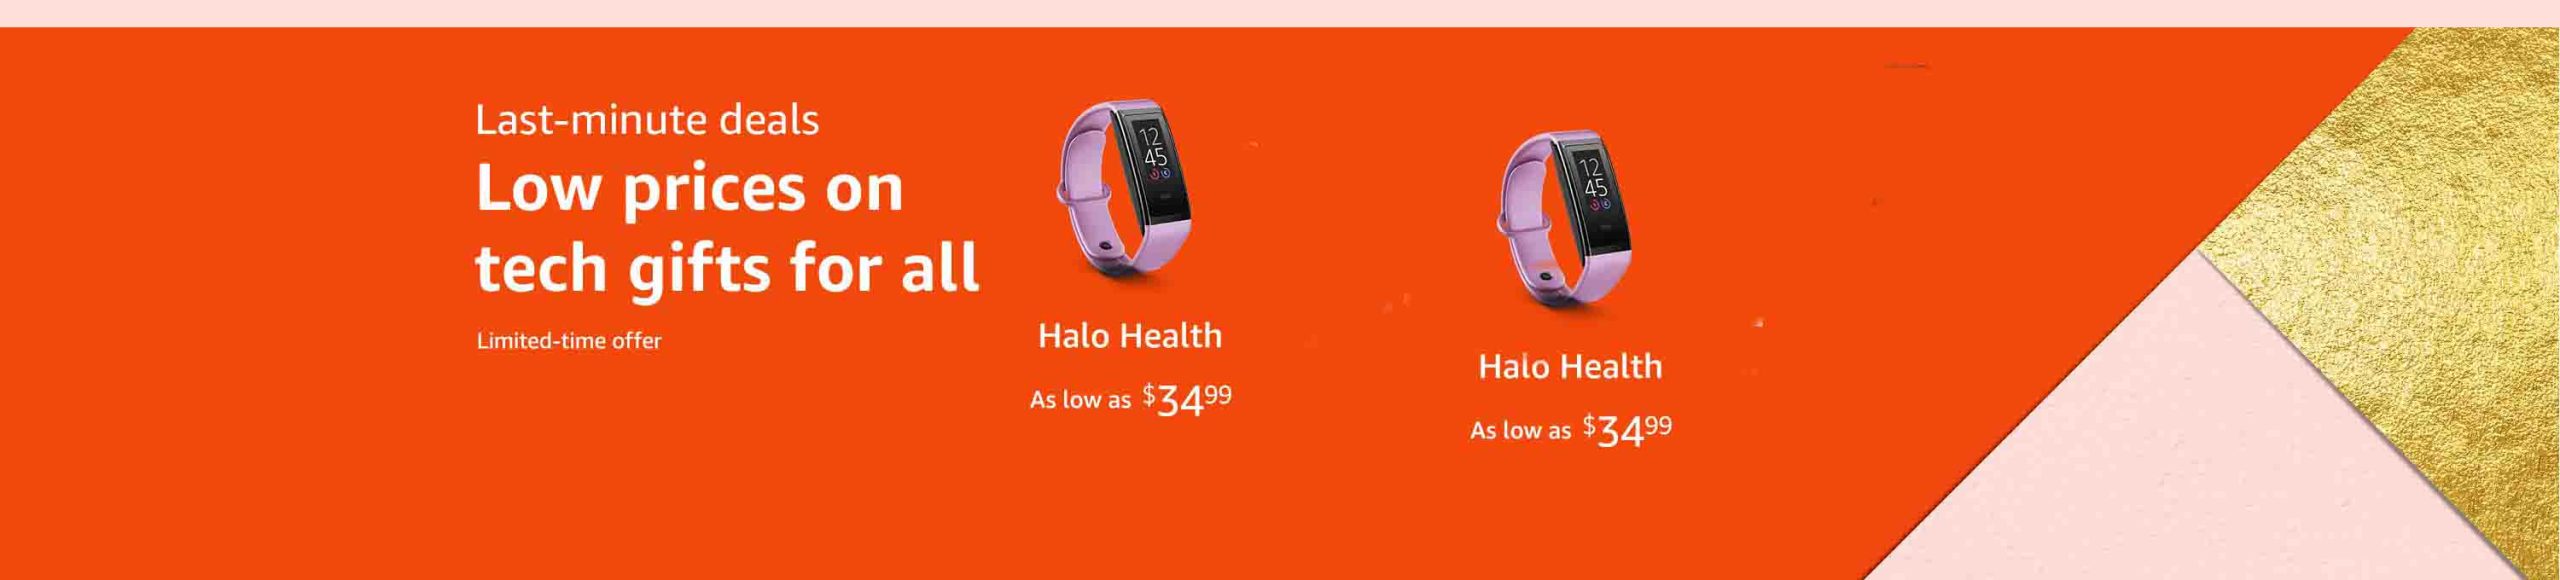 Amazon Halo Devices